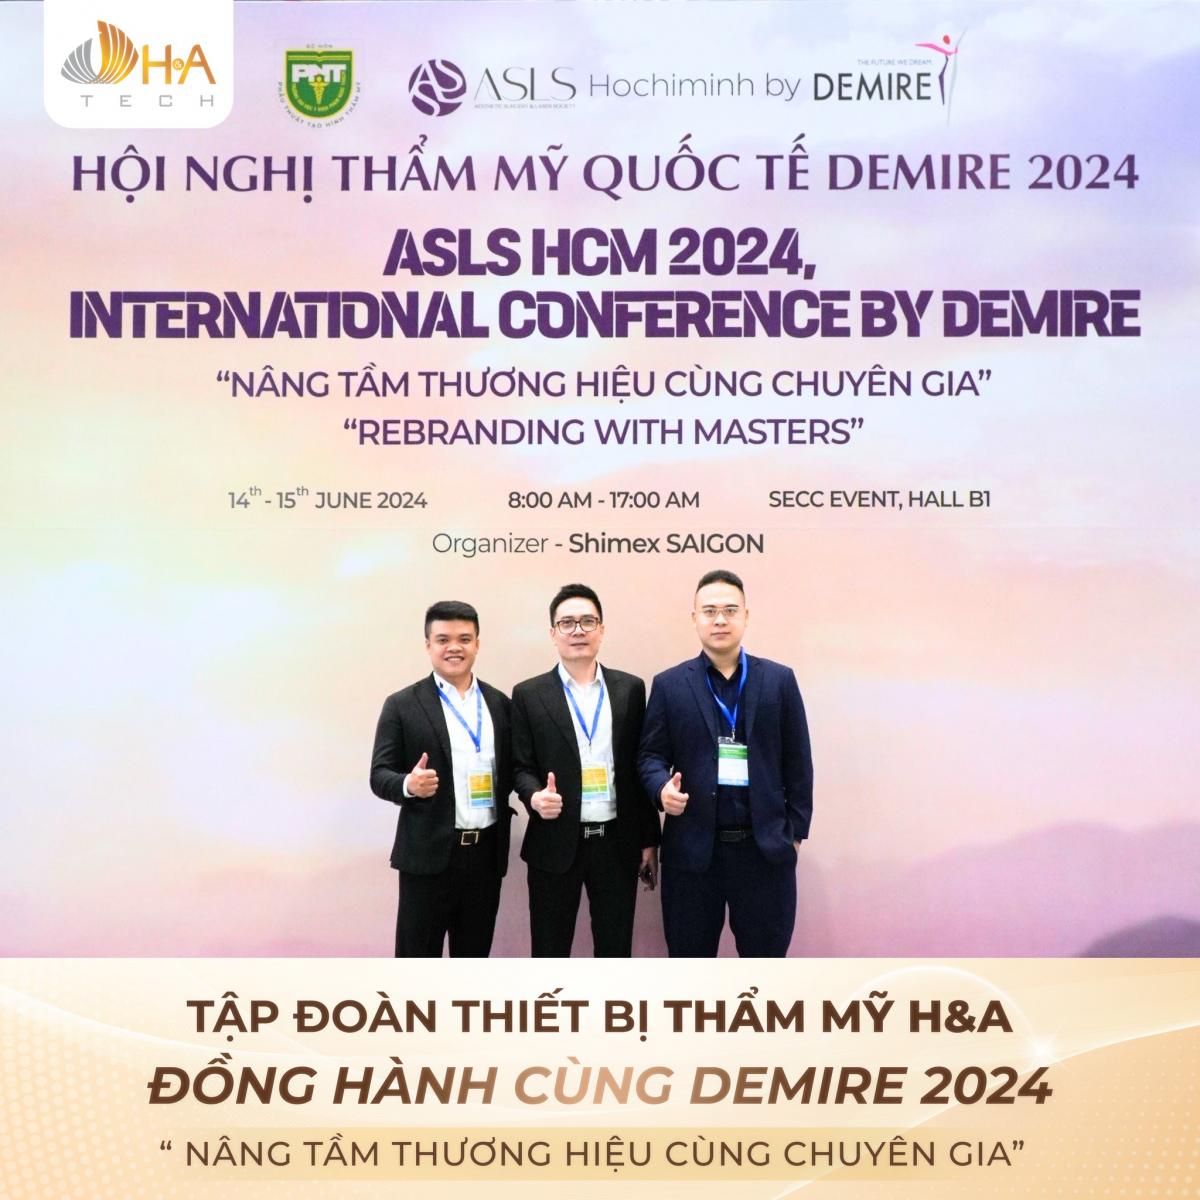 Sự kiện đặc biệt tại Hội nghị DEMIRE 2024: H&A đồng hành cùng Laseroptek và Eunsung kết hợp mang đến những đột phá trong công nghệ thẩm mỹ và y tế.